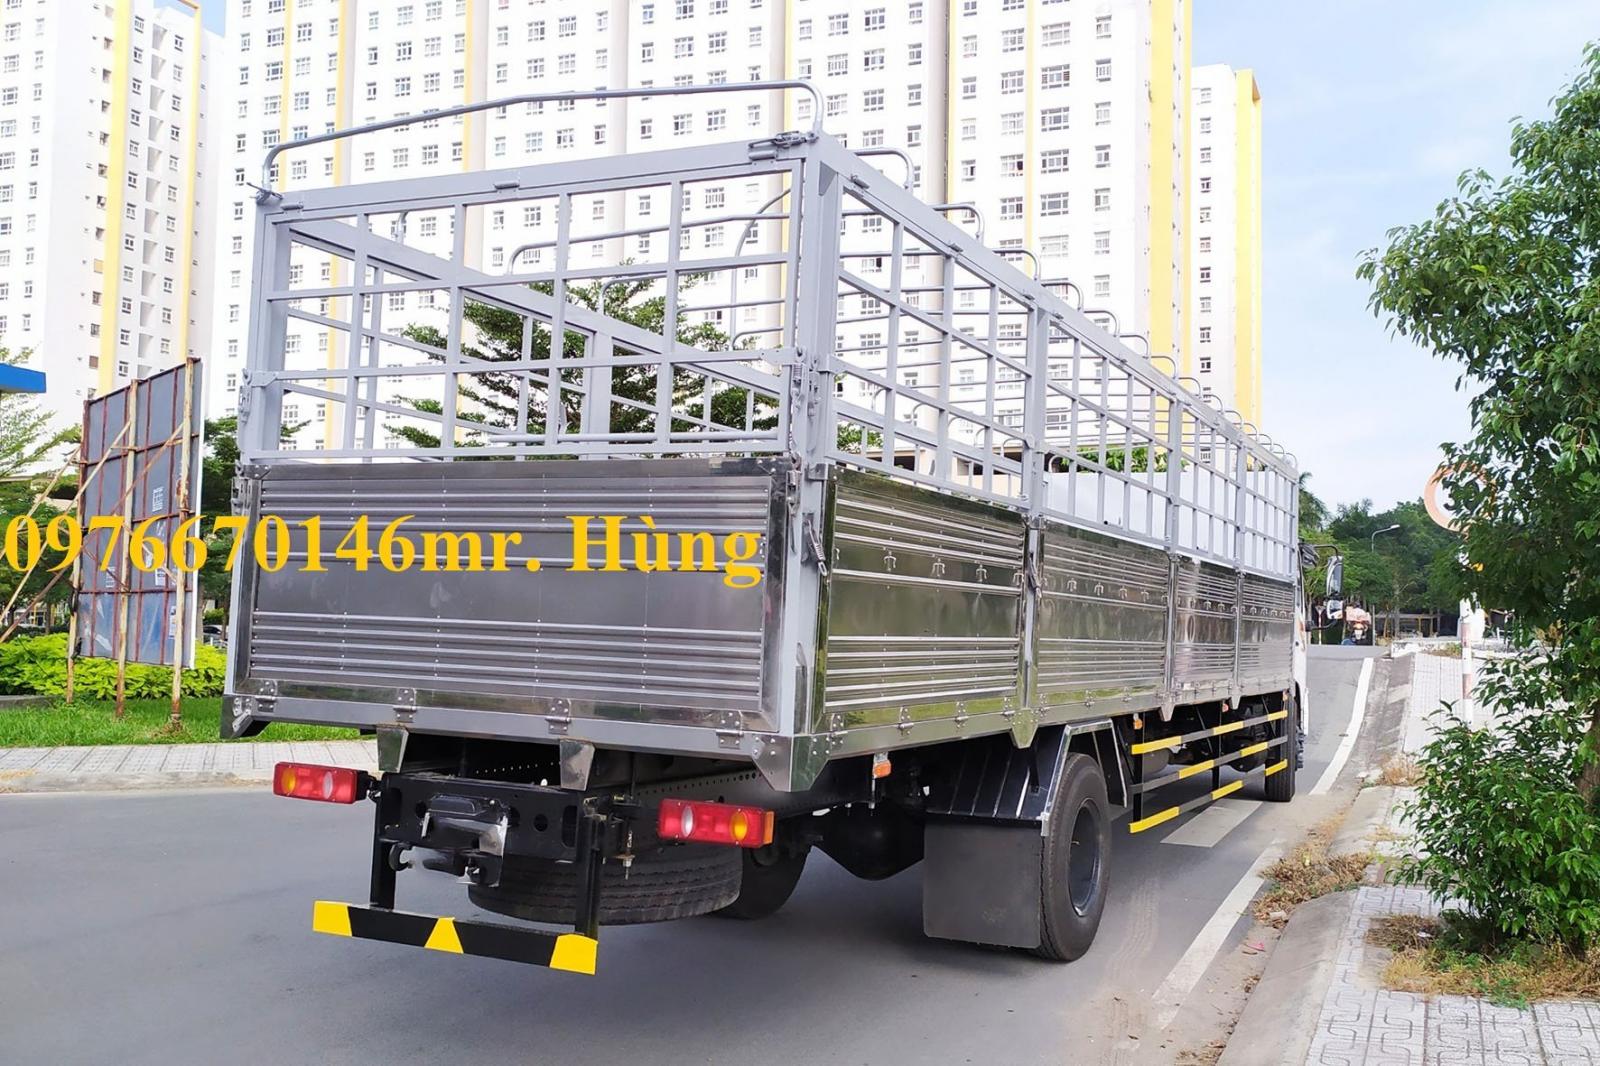 Cần bán xe tải Dongfeng 8t thùng kín dài 9m5